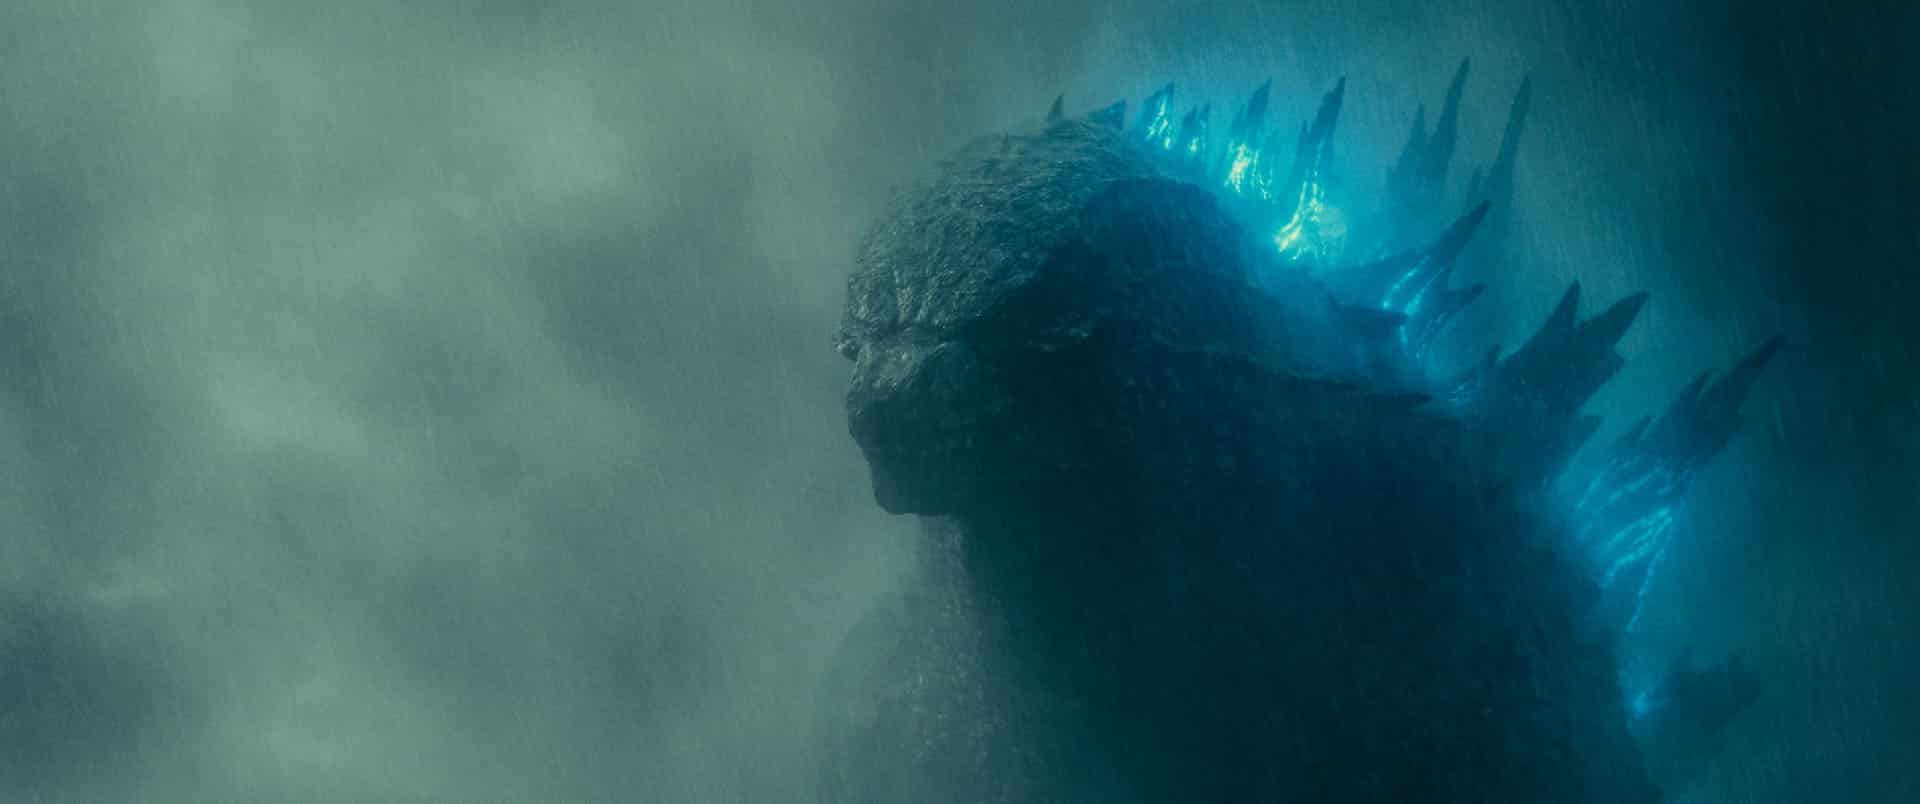 Godzilla II: King of the Monsters – ecco un nuovo grandioso poster